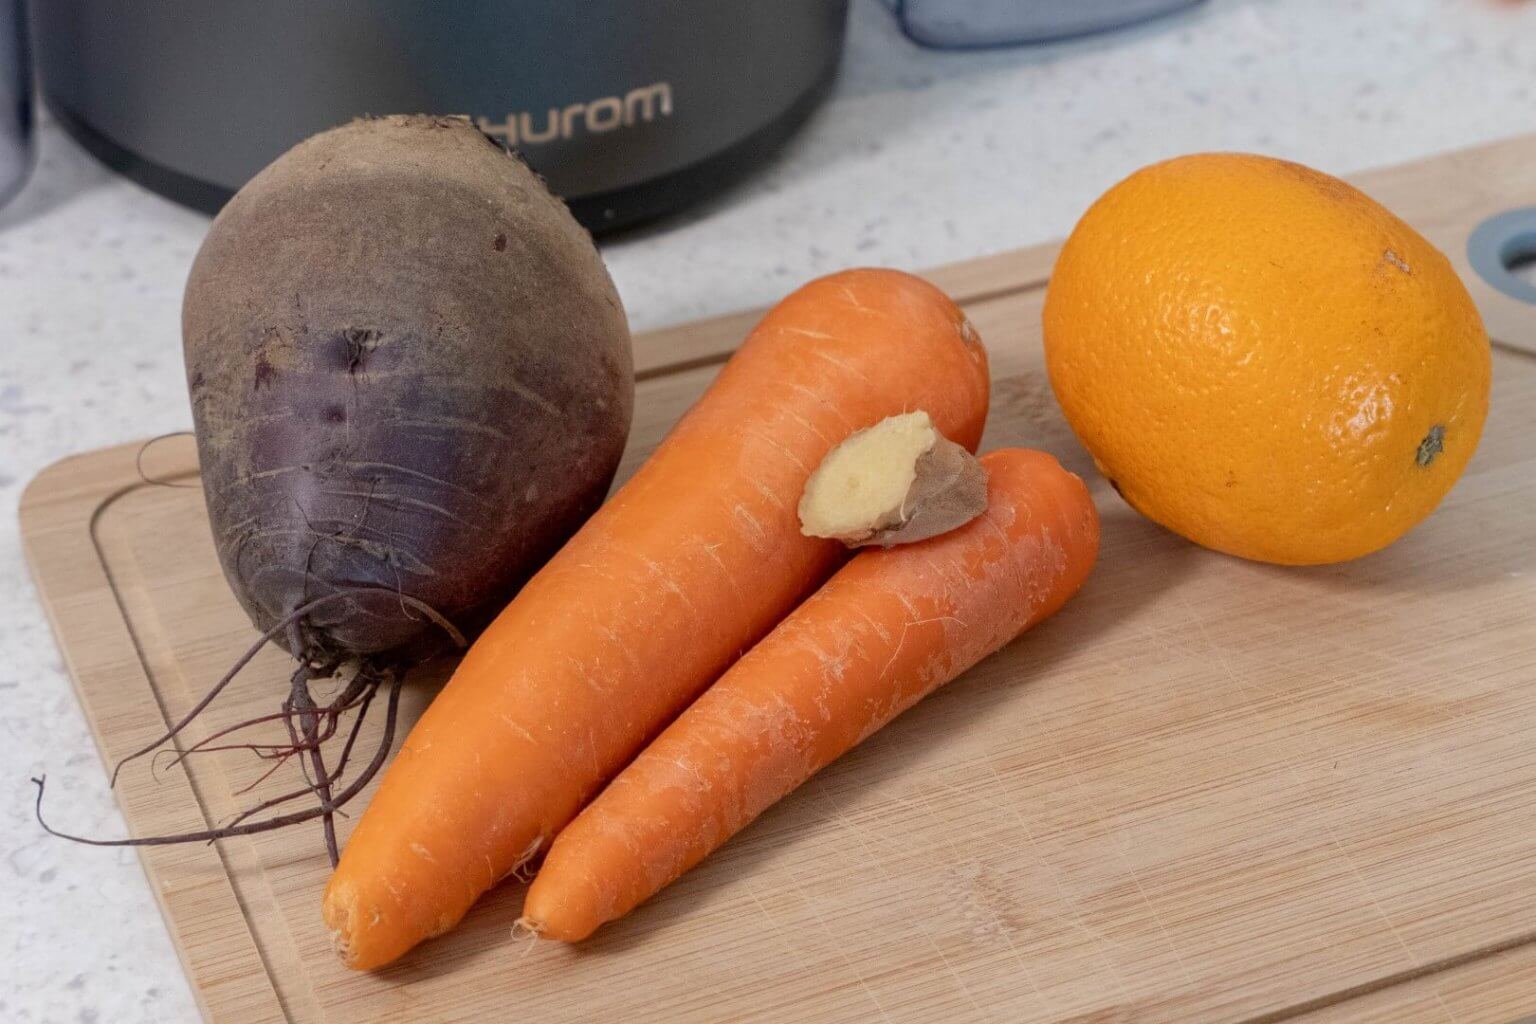 Ingwer, Orange, Rote Bete und Karotten zum Entsaften bereit